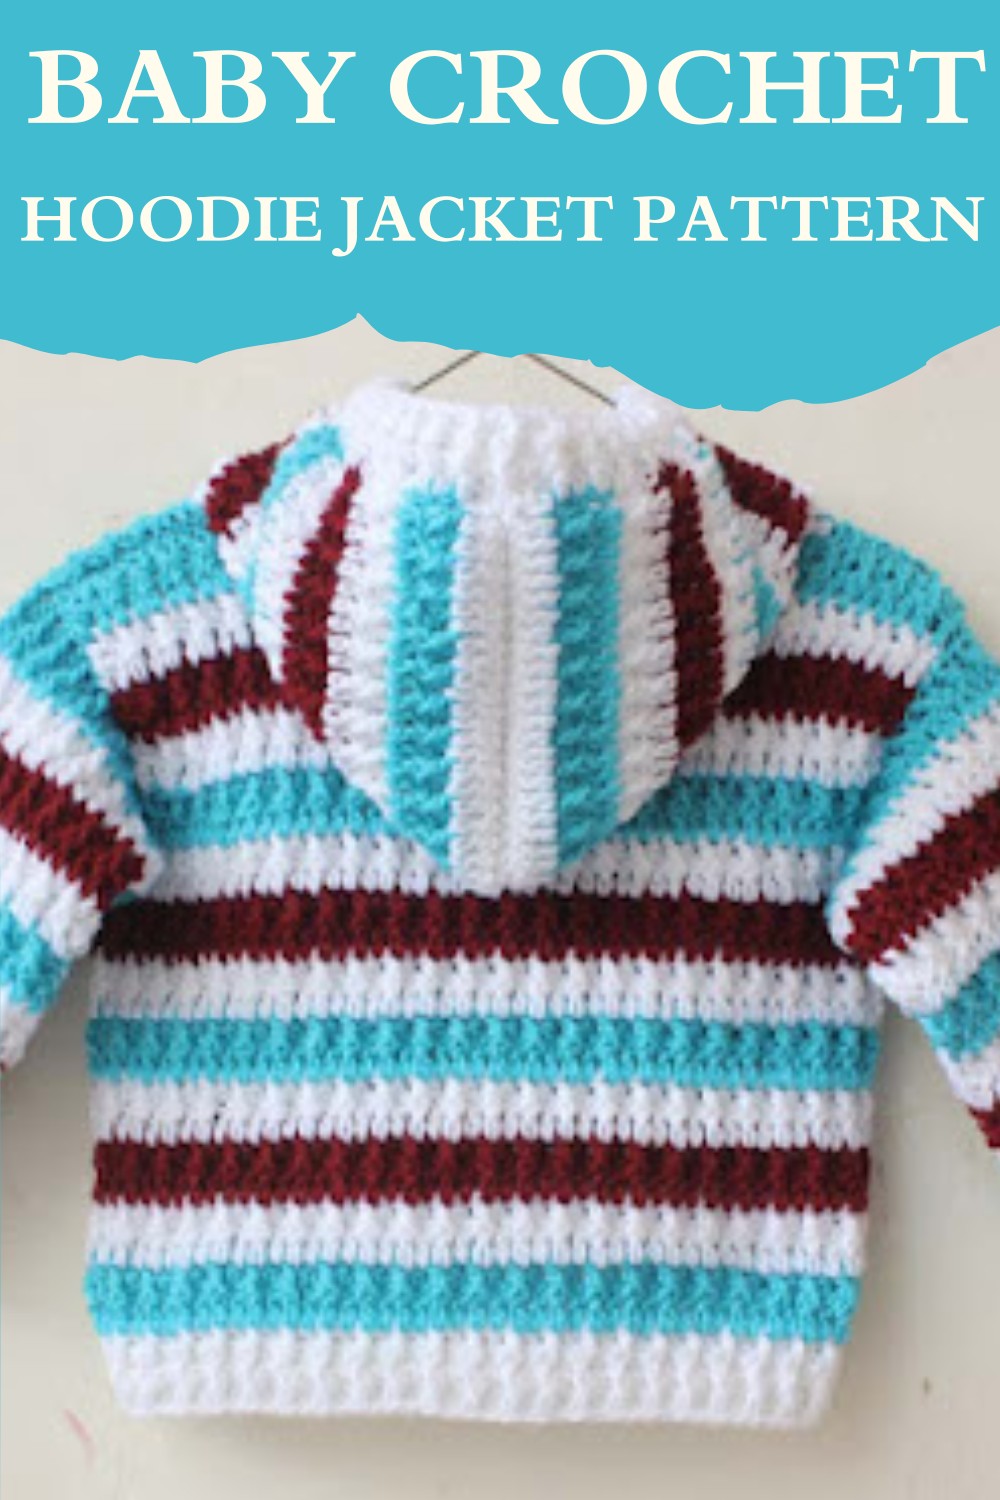 Baby Crochet Hoodie Jacket Pattern